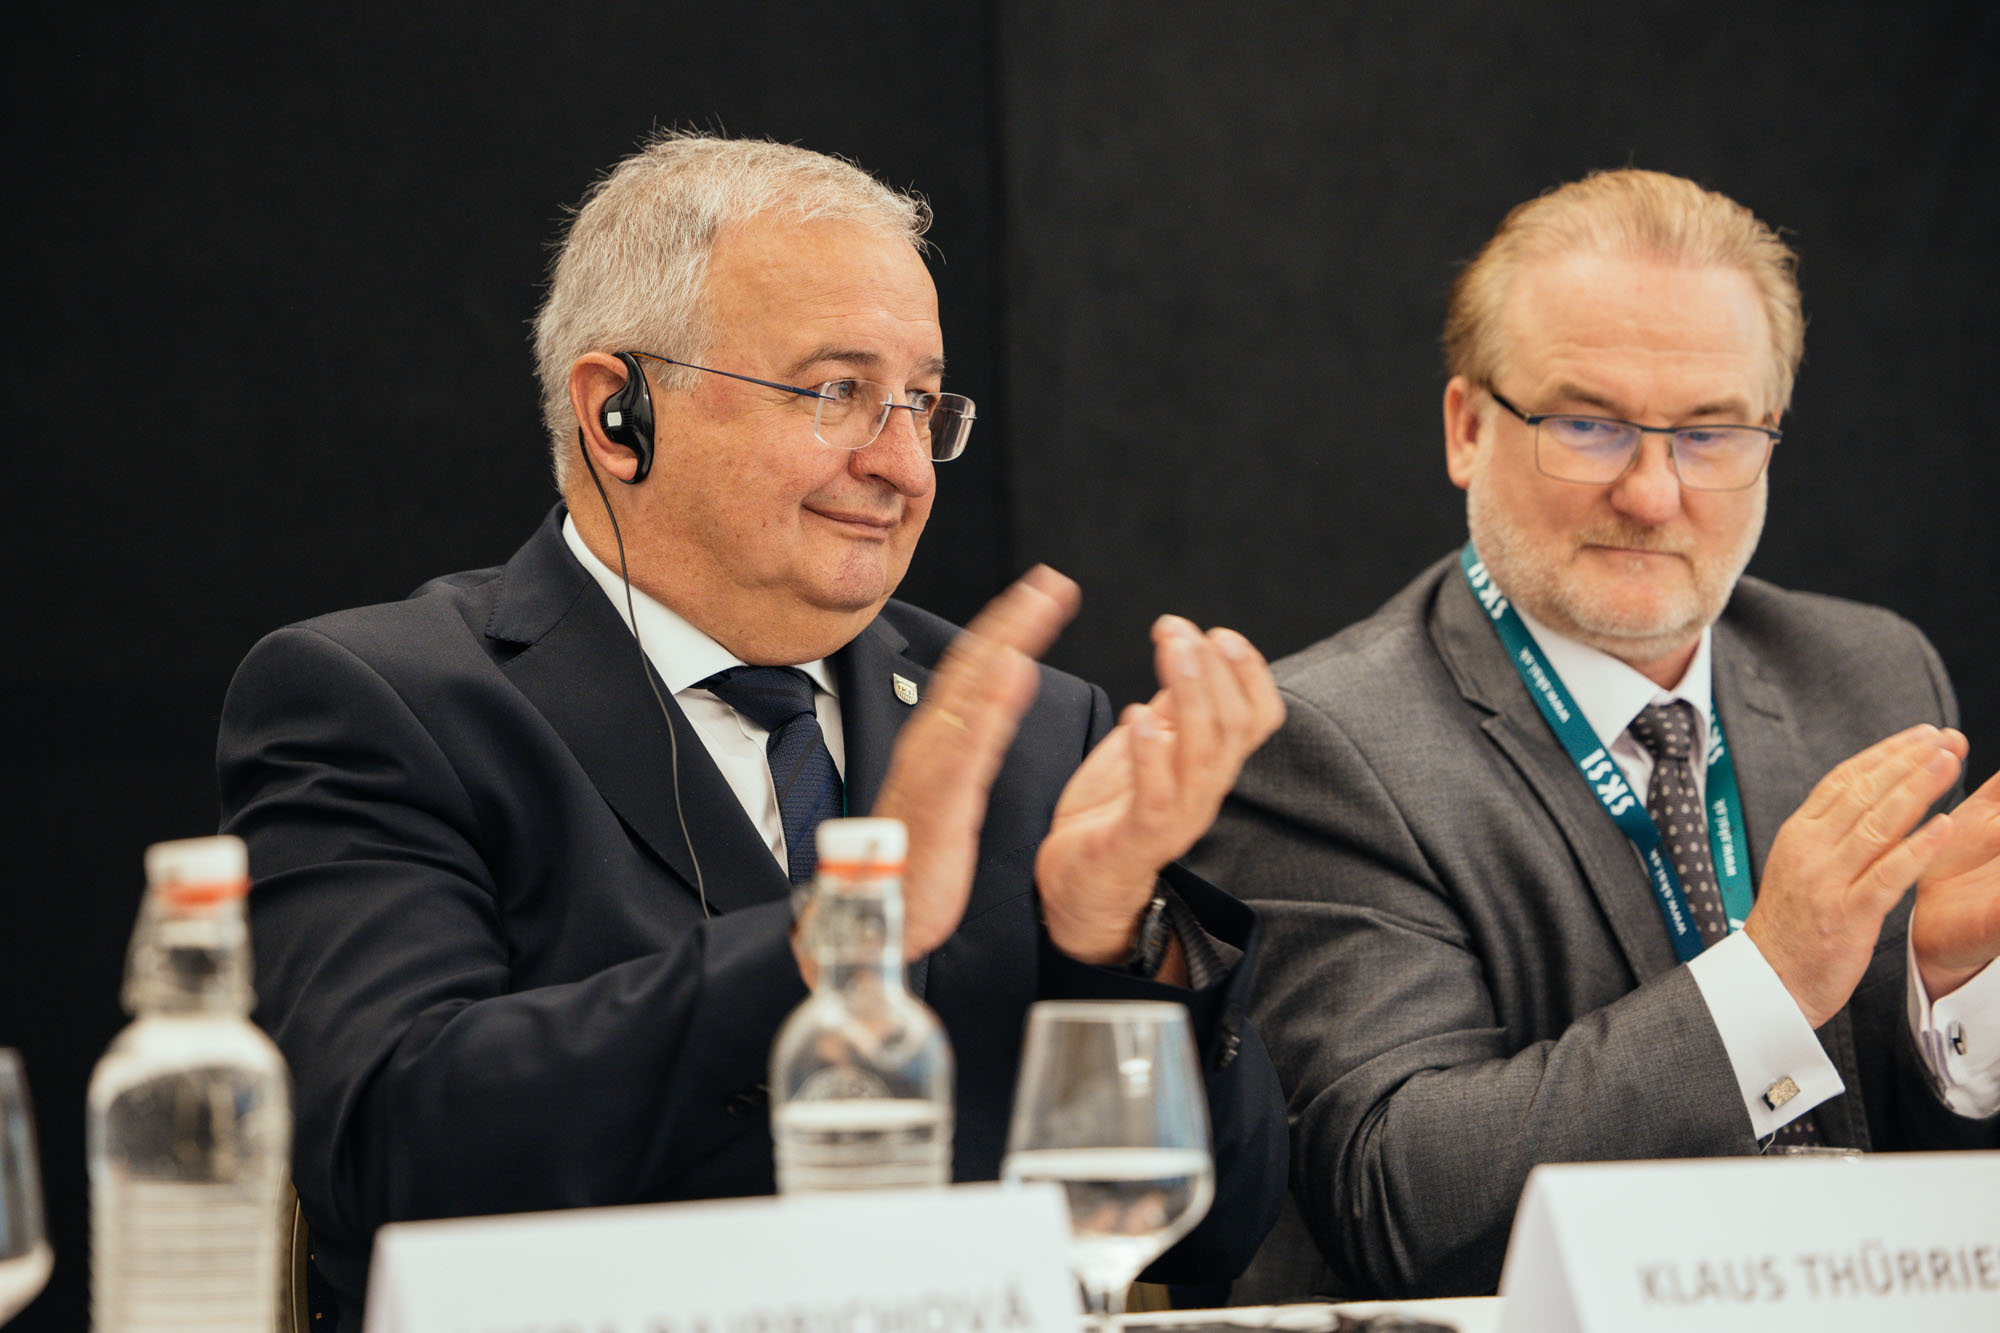 Prezident Európskej rady inžinierskych komôr (ECEC) Klaus Thürriedl (vľavo) a podpredseda predstavenstva Slovenskej komory stavebných inžinierov Ján Petržala.